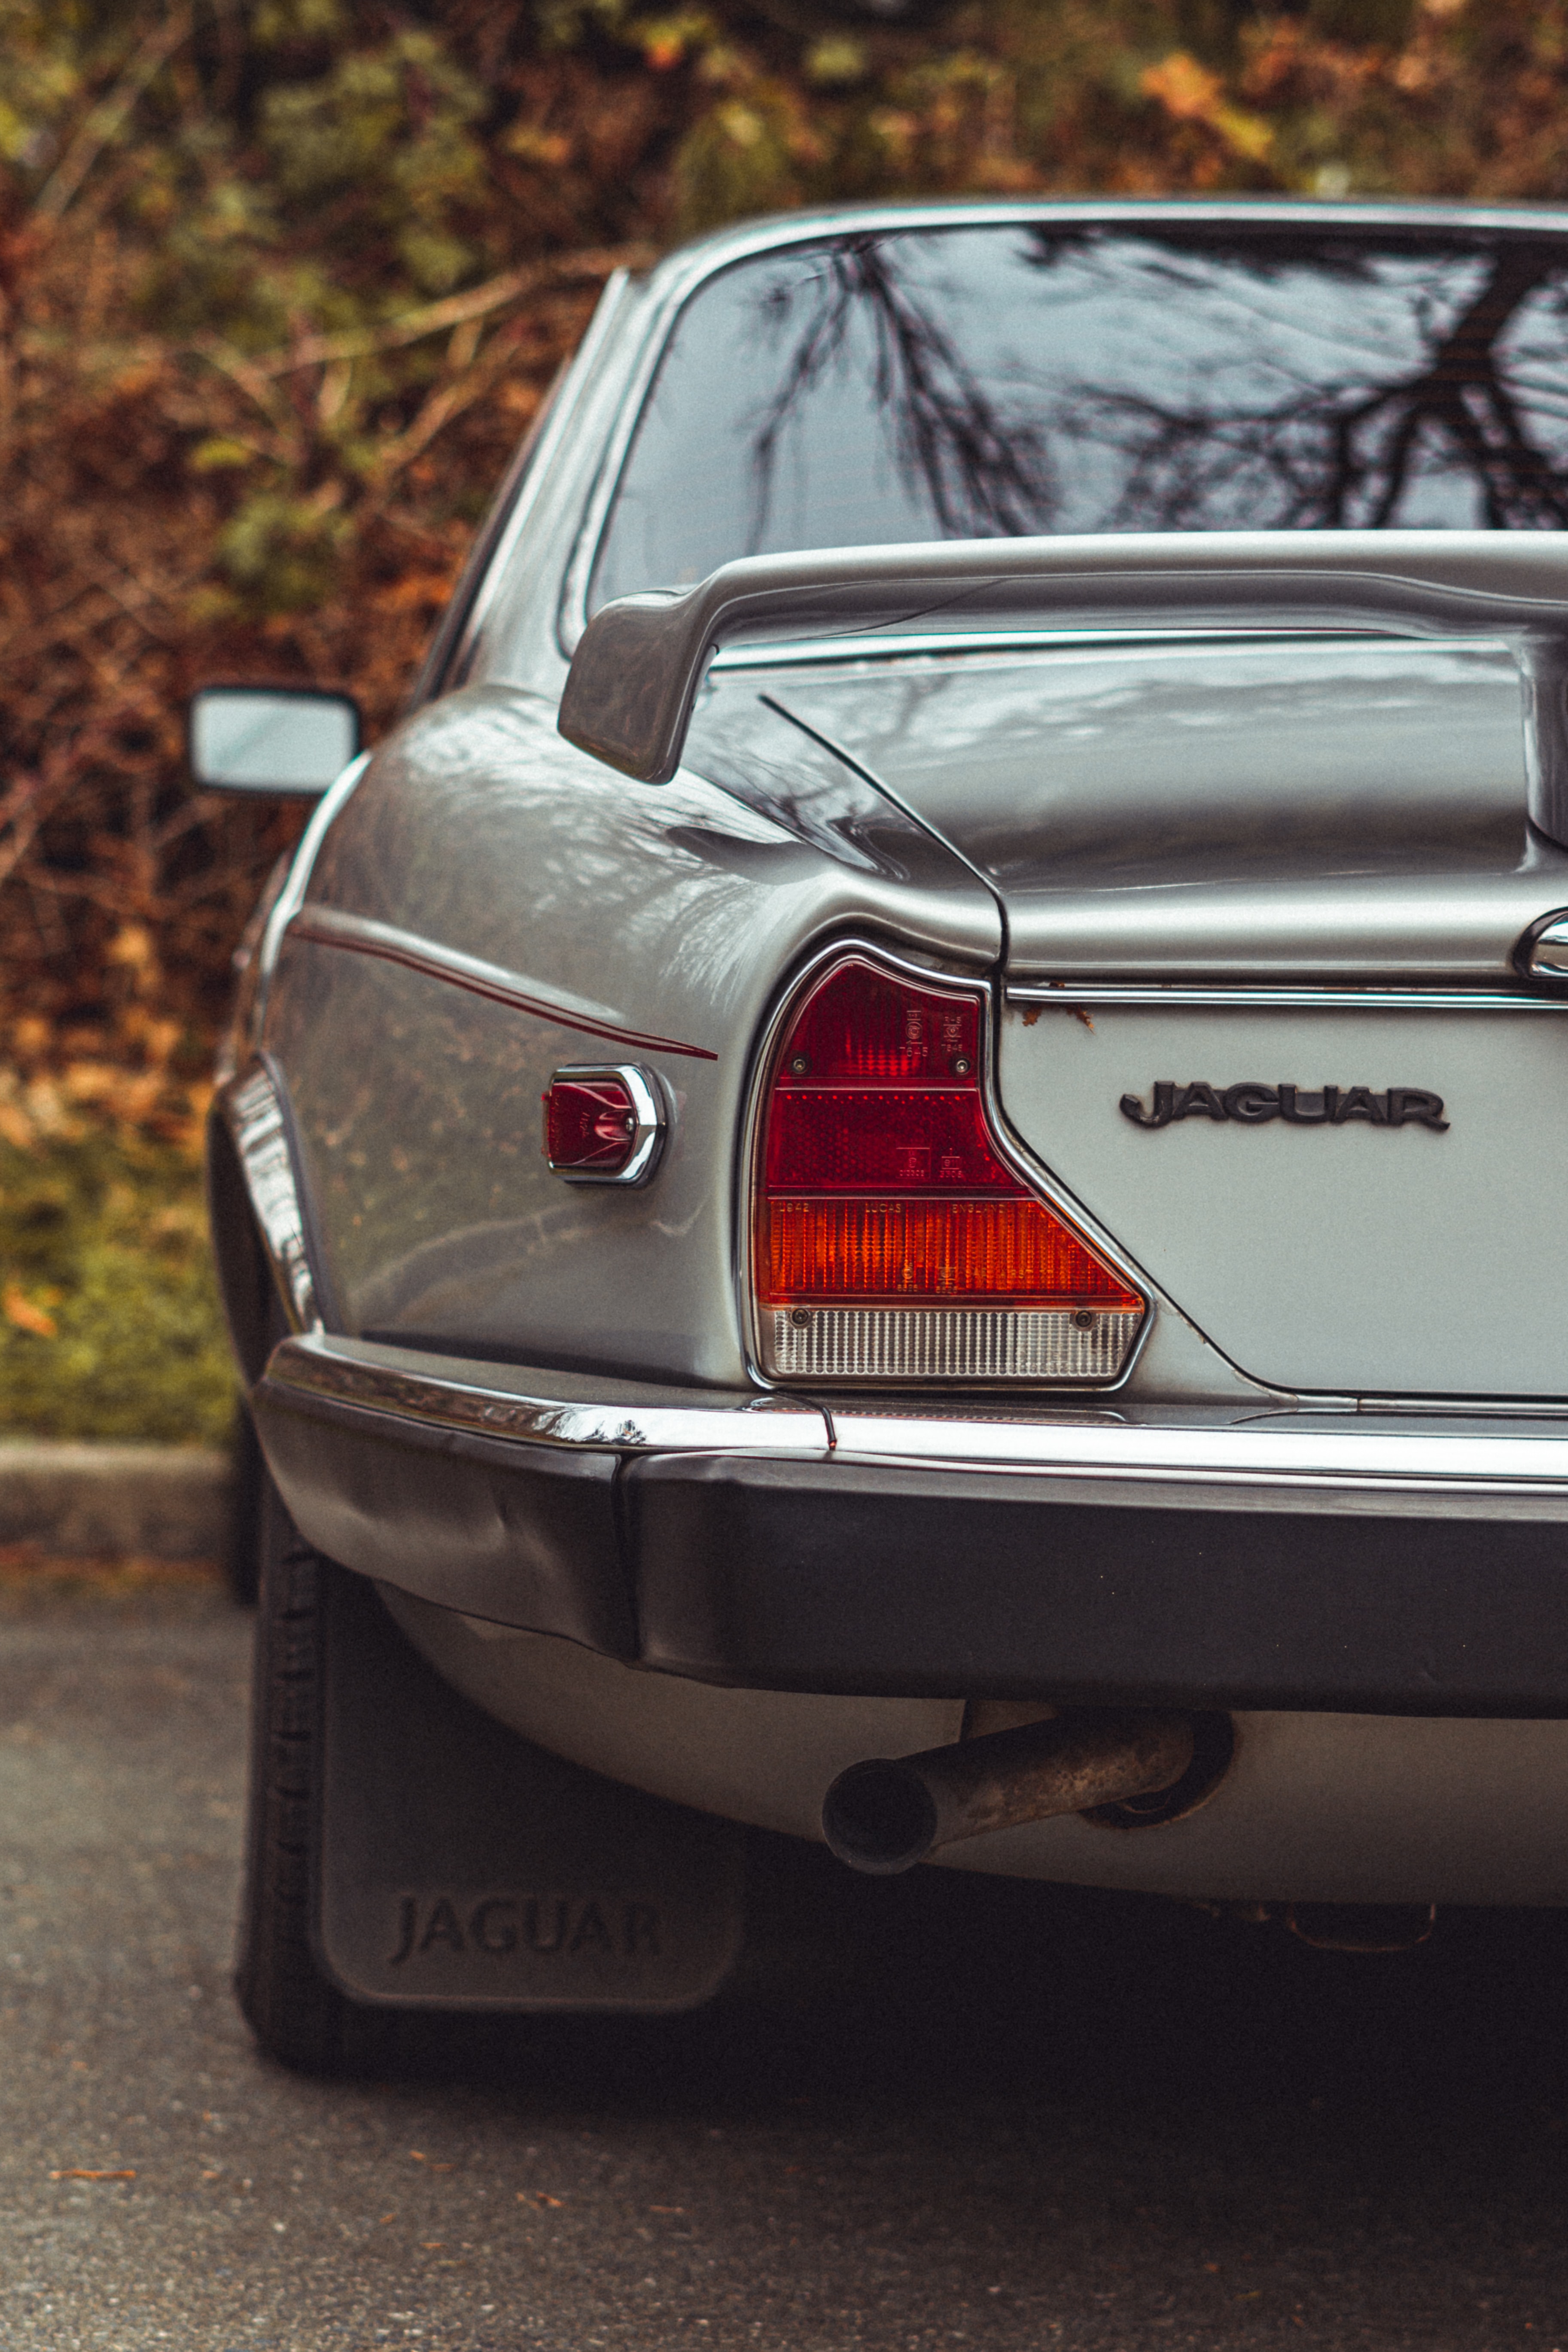 PC Wallpapers jaguar, cars, car, machine, vintage, back view, rear view, retro